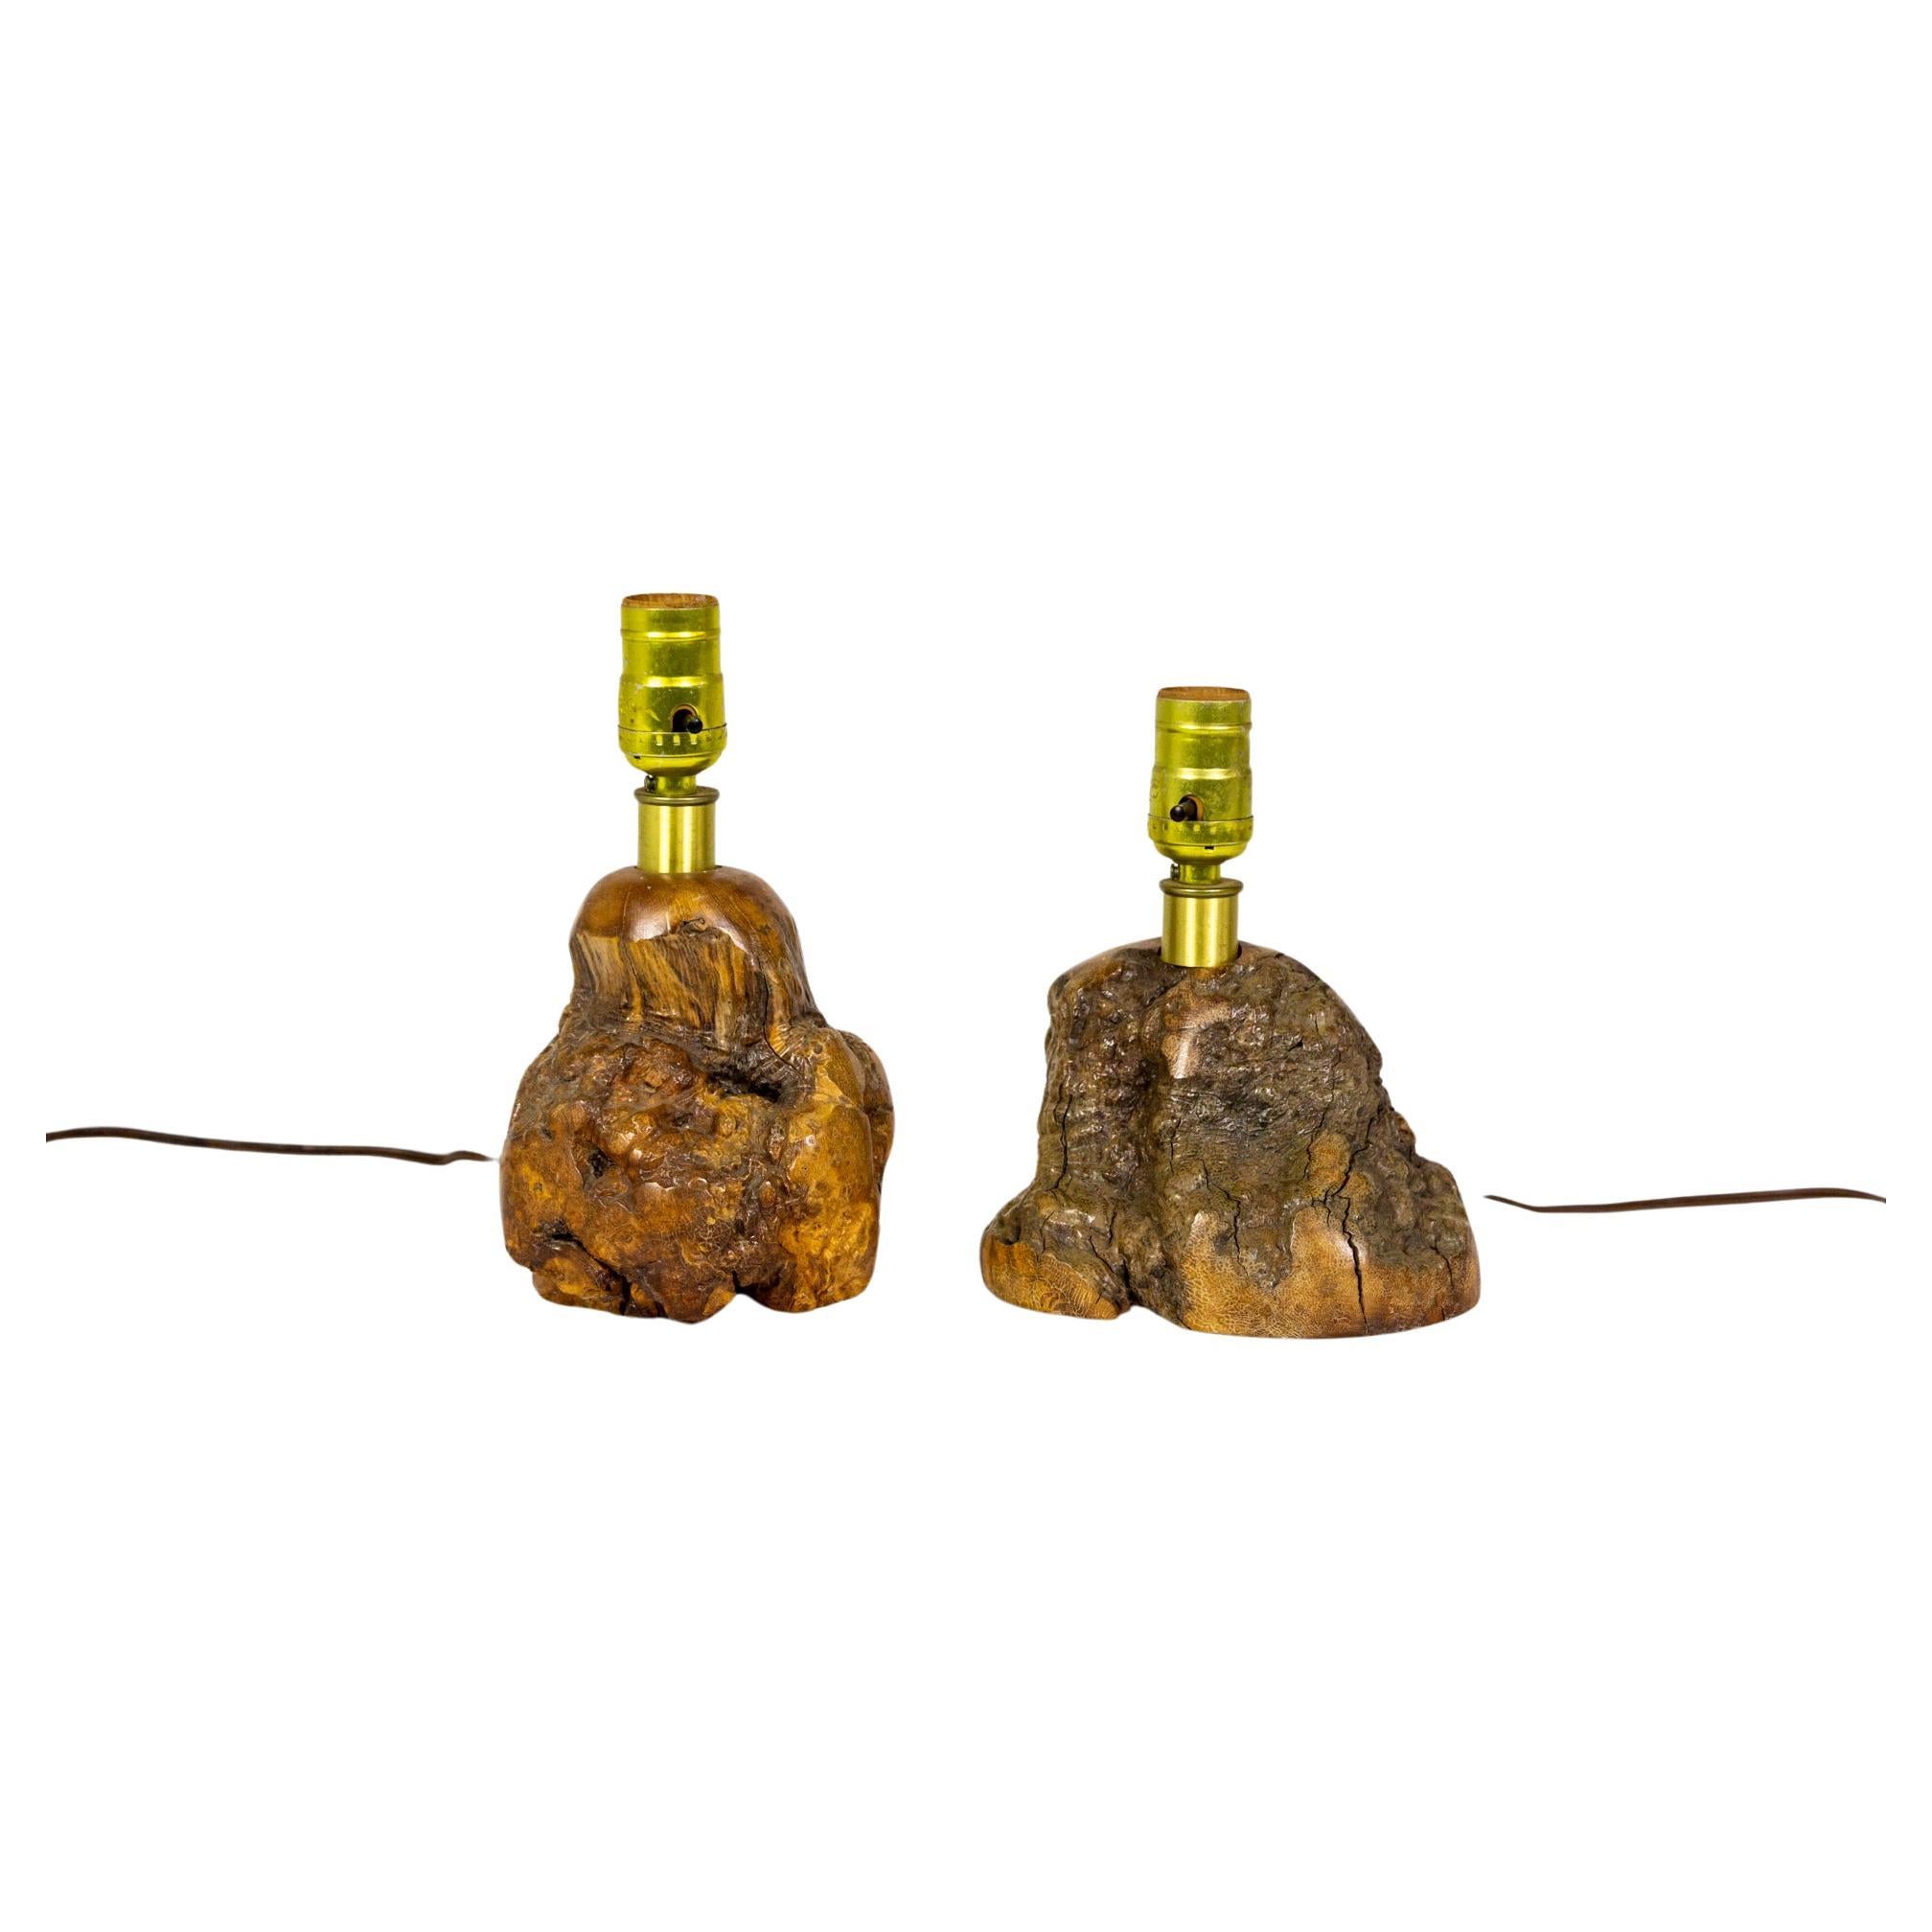 Small Sculptural Burl Wood Lamps (pair)